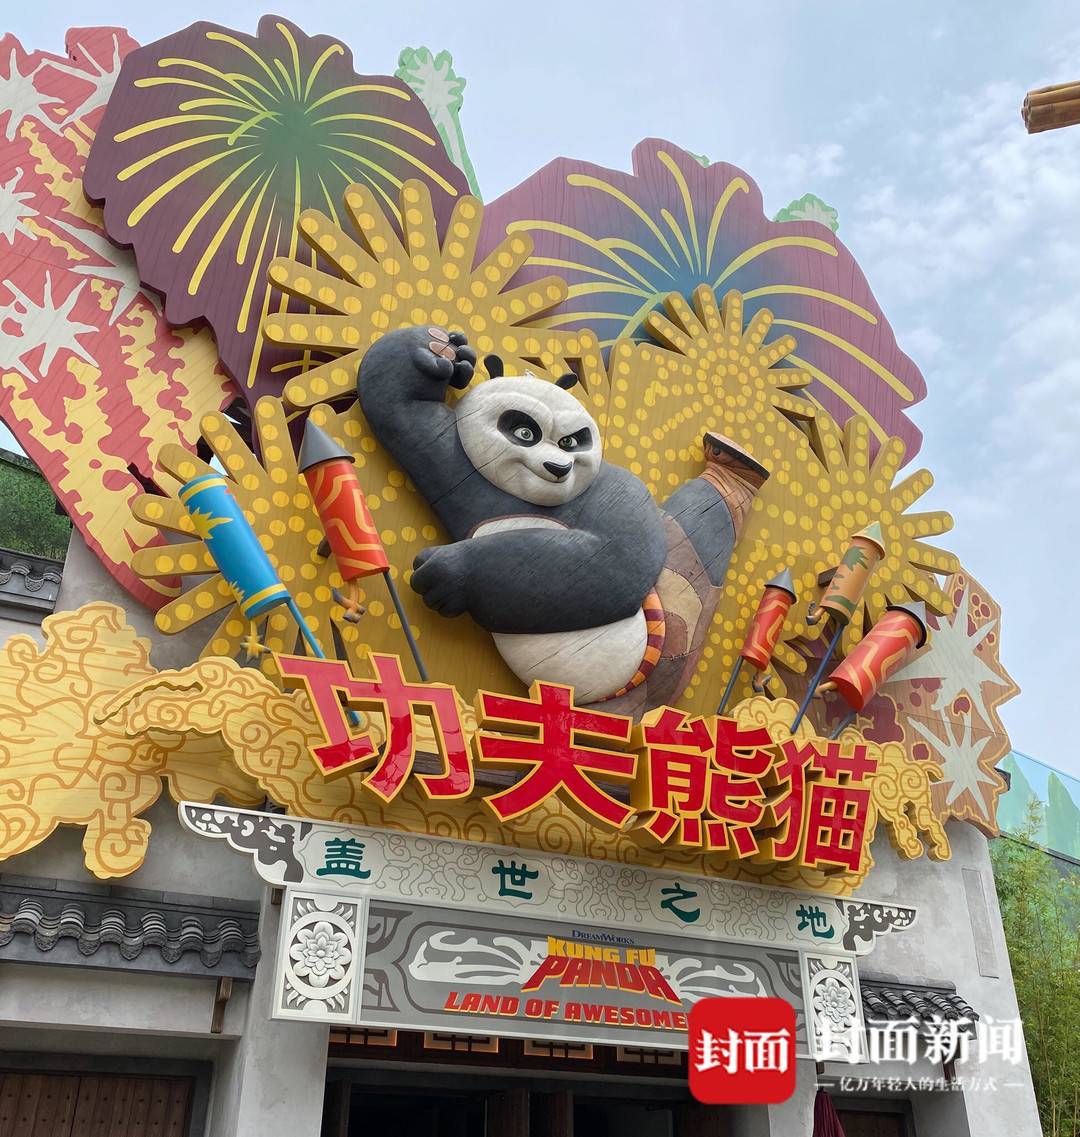 功夫熊猫盖世之地为北京环球影城独有.受访者供图